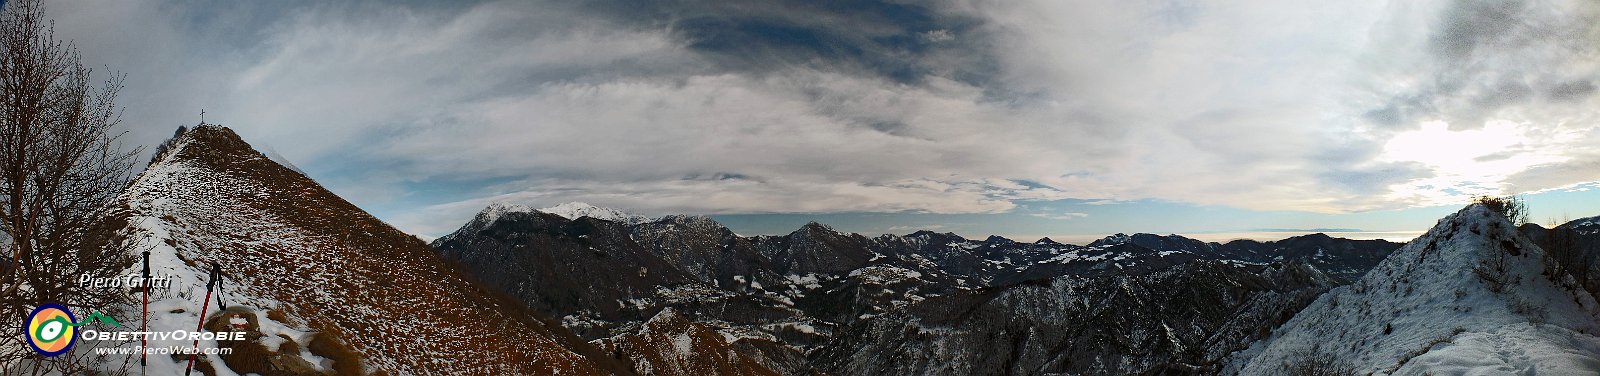 12 Vista verso la Valle Serina ed i suoi monti.jpg